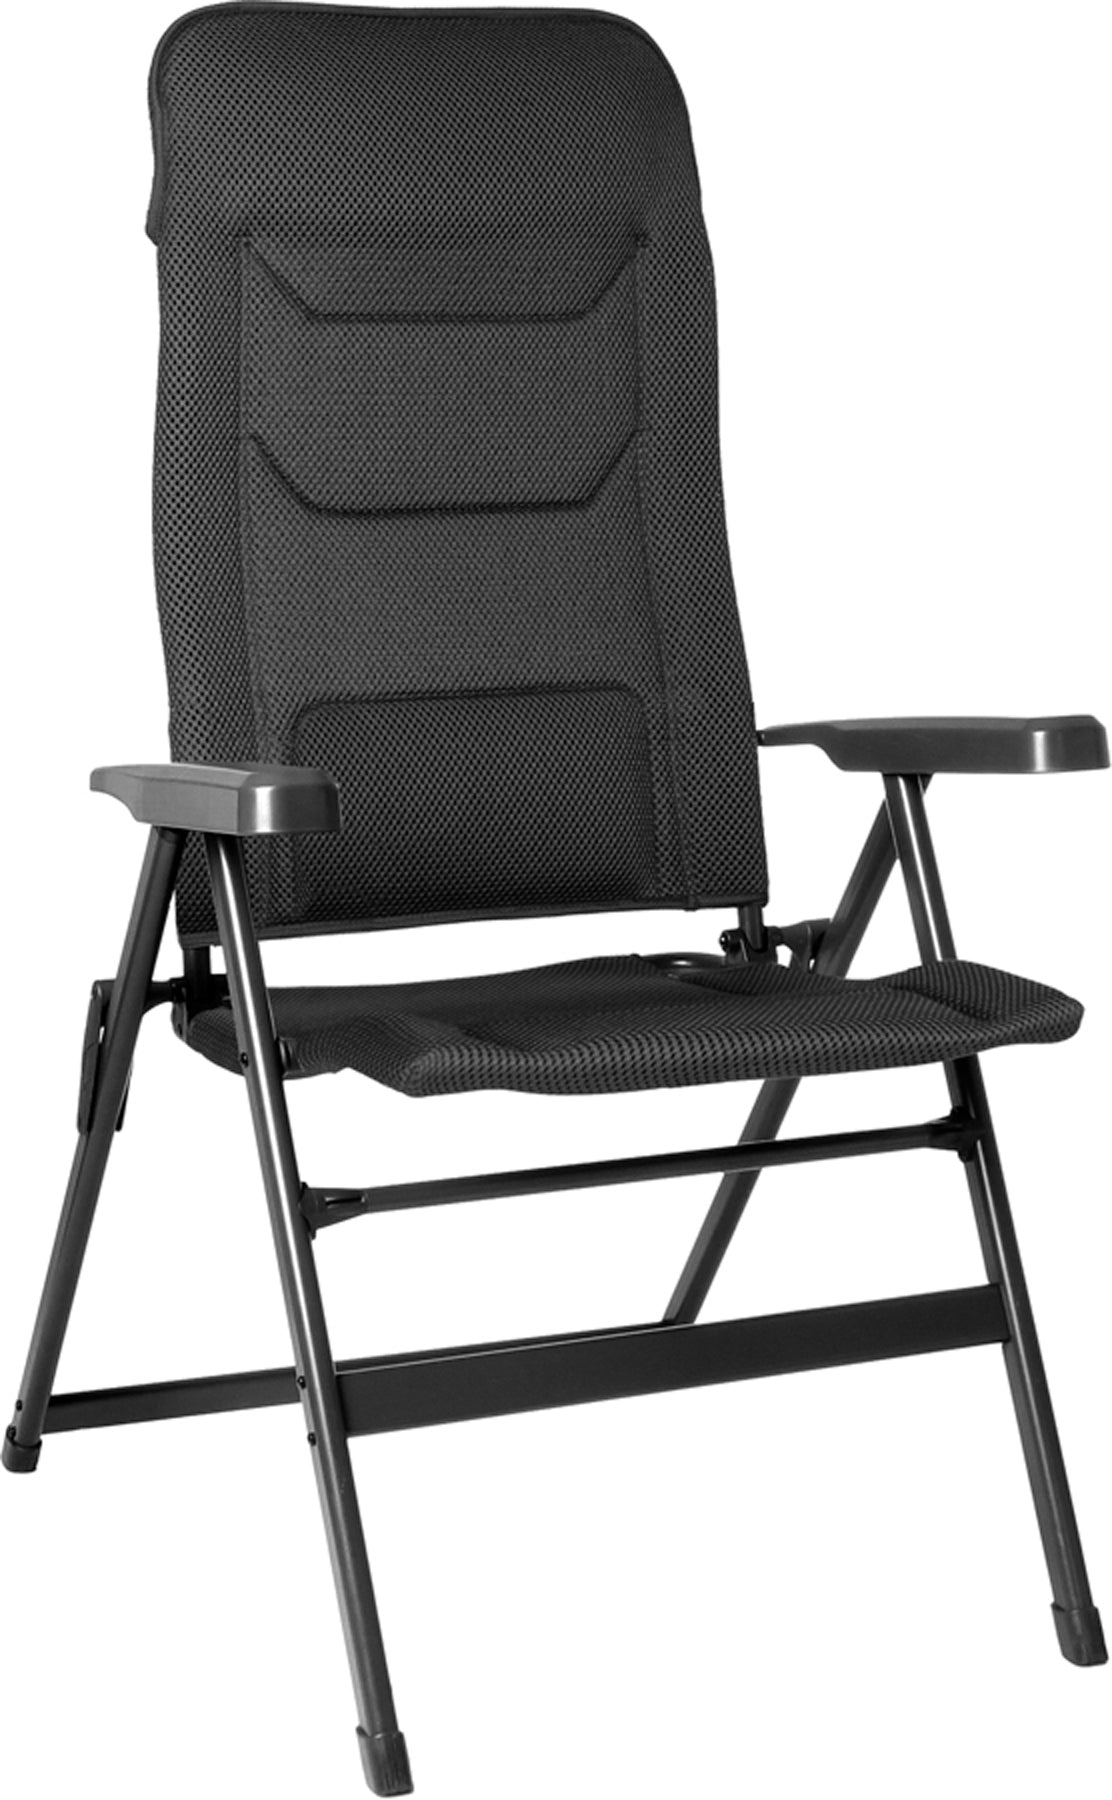 Луксозен стол за къминг, каравана или кемпер. Здрав и качествен изработен с качествени материали, алуминий и текстил. Luxury folding chair for camping, camper or caravan. Strong and quality materials, light.